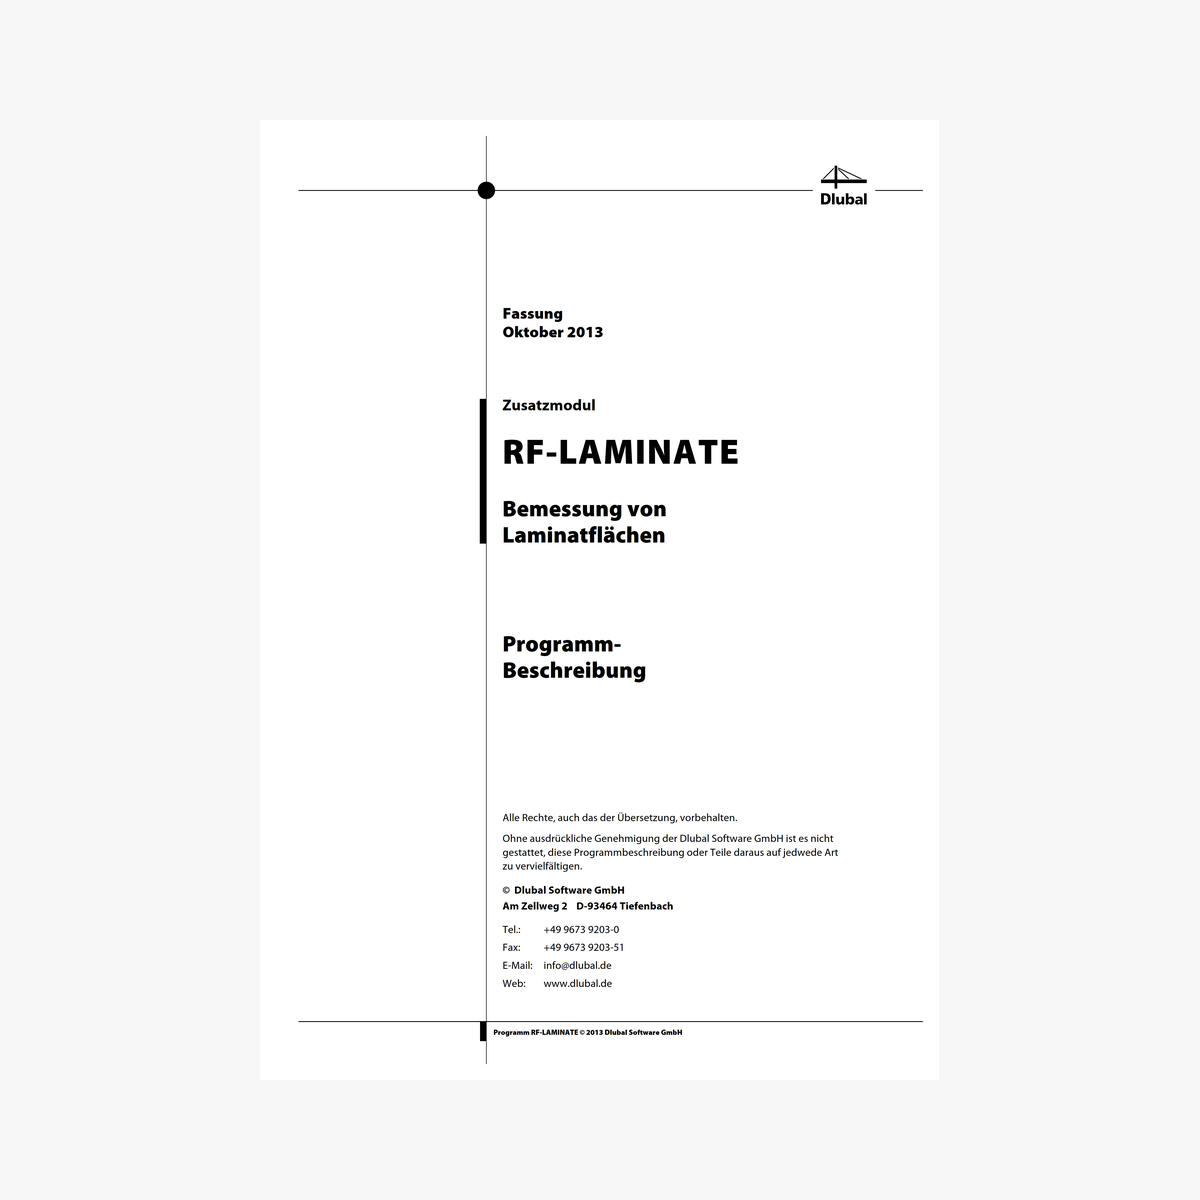 Handbuch RF-LAMINATE